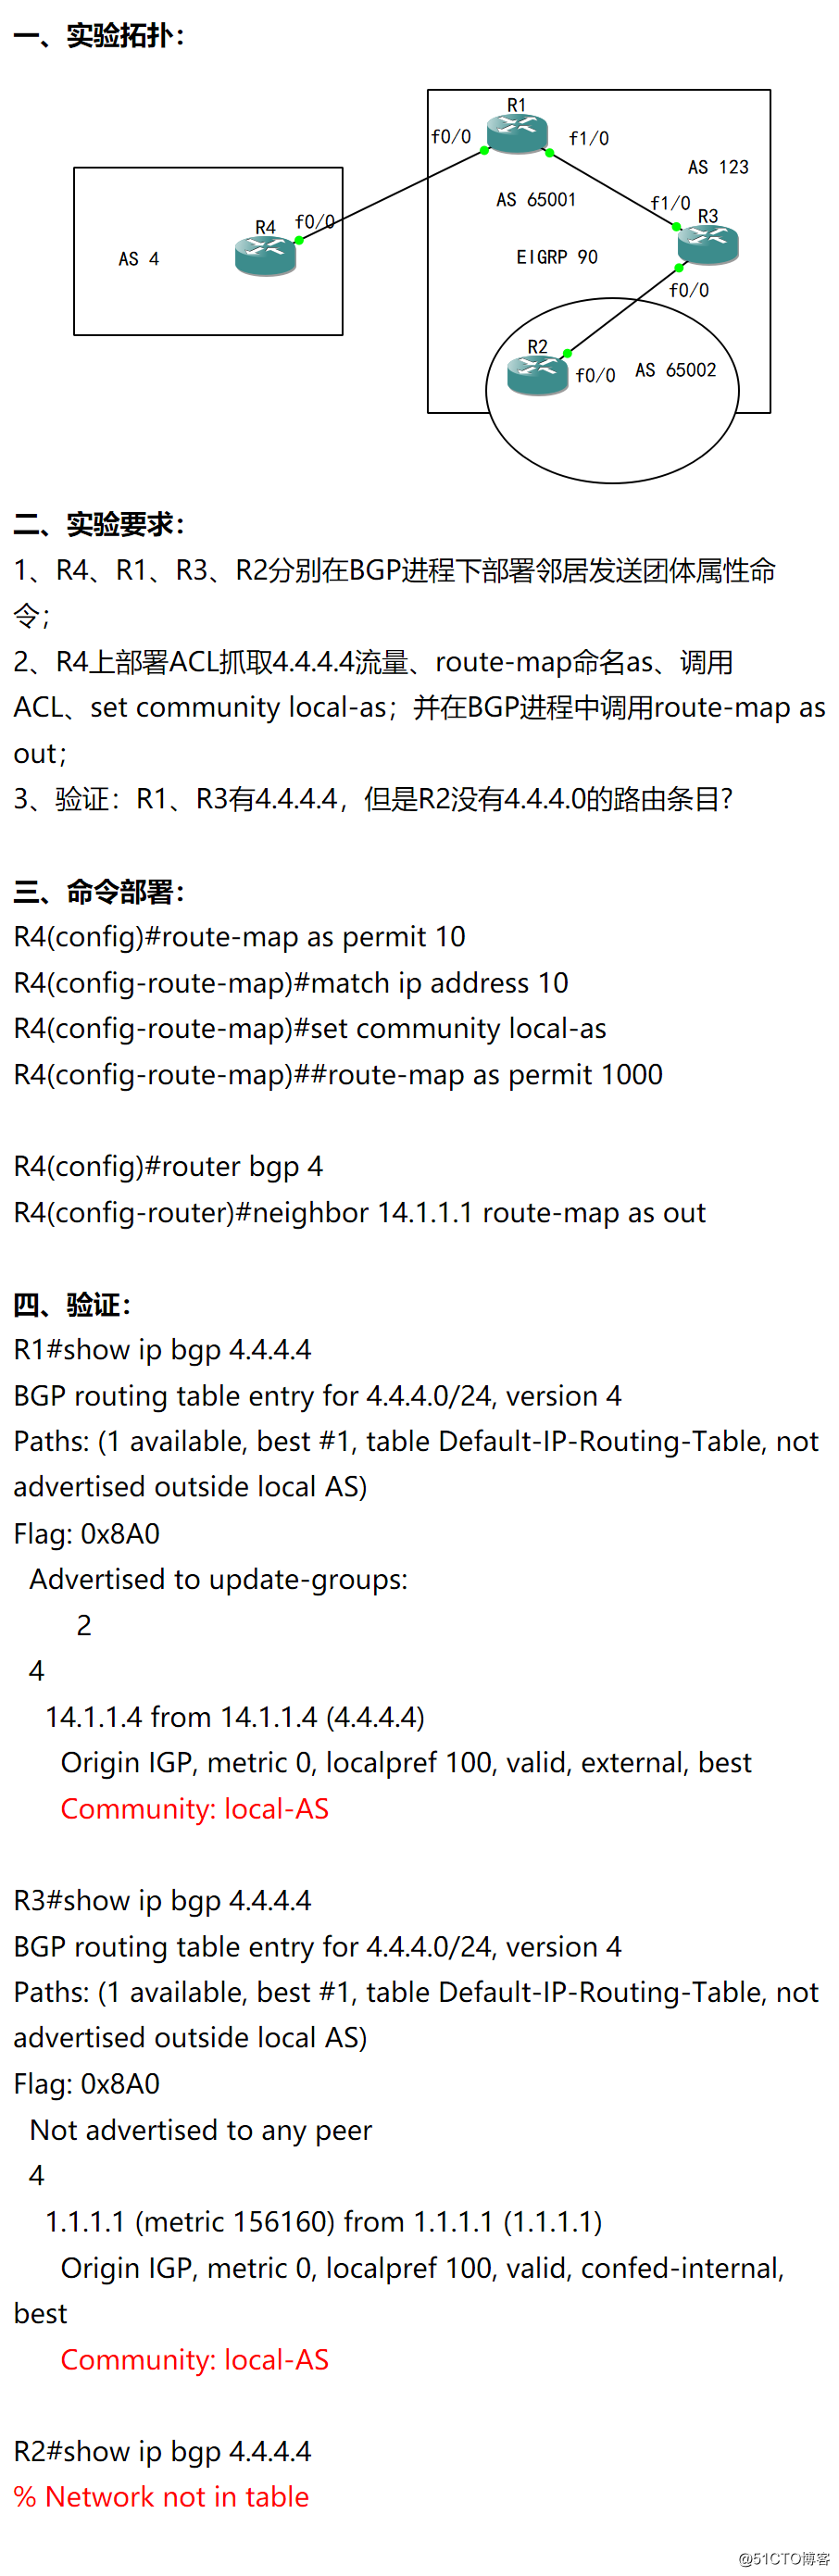 51-高级路由：BGP community属性：local-as